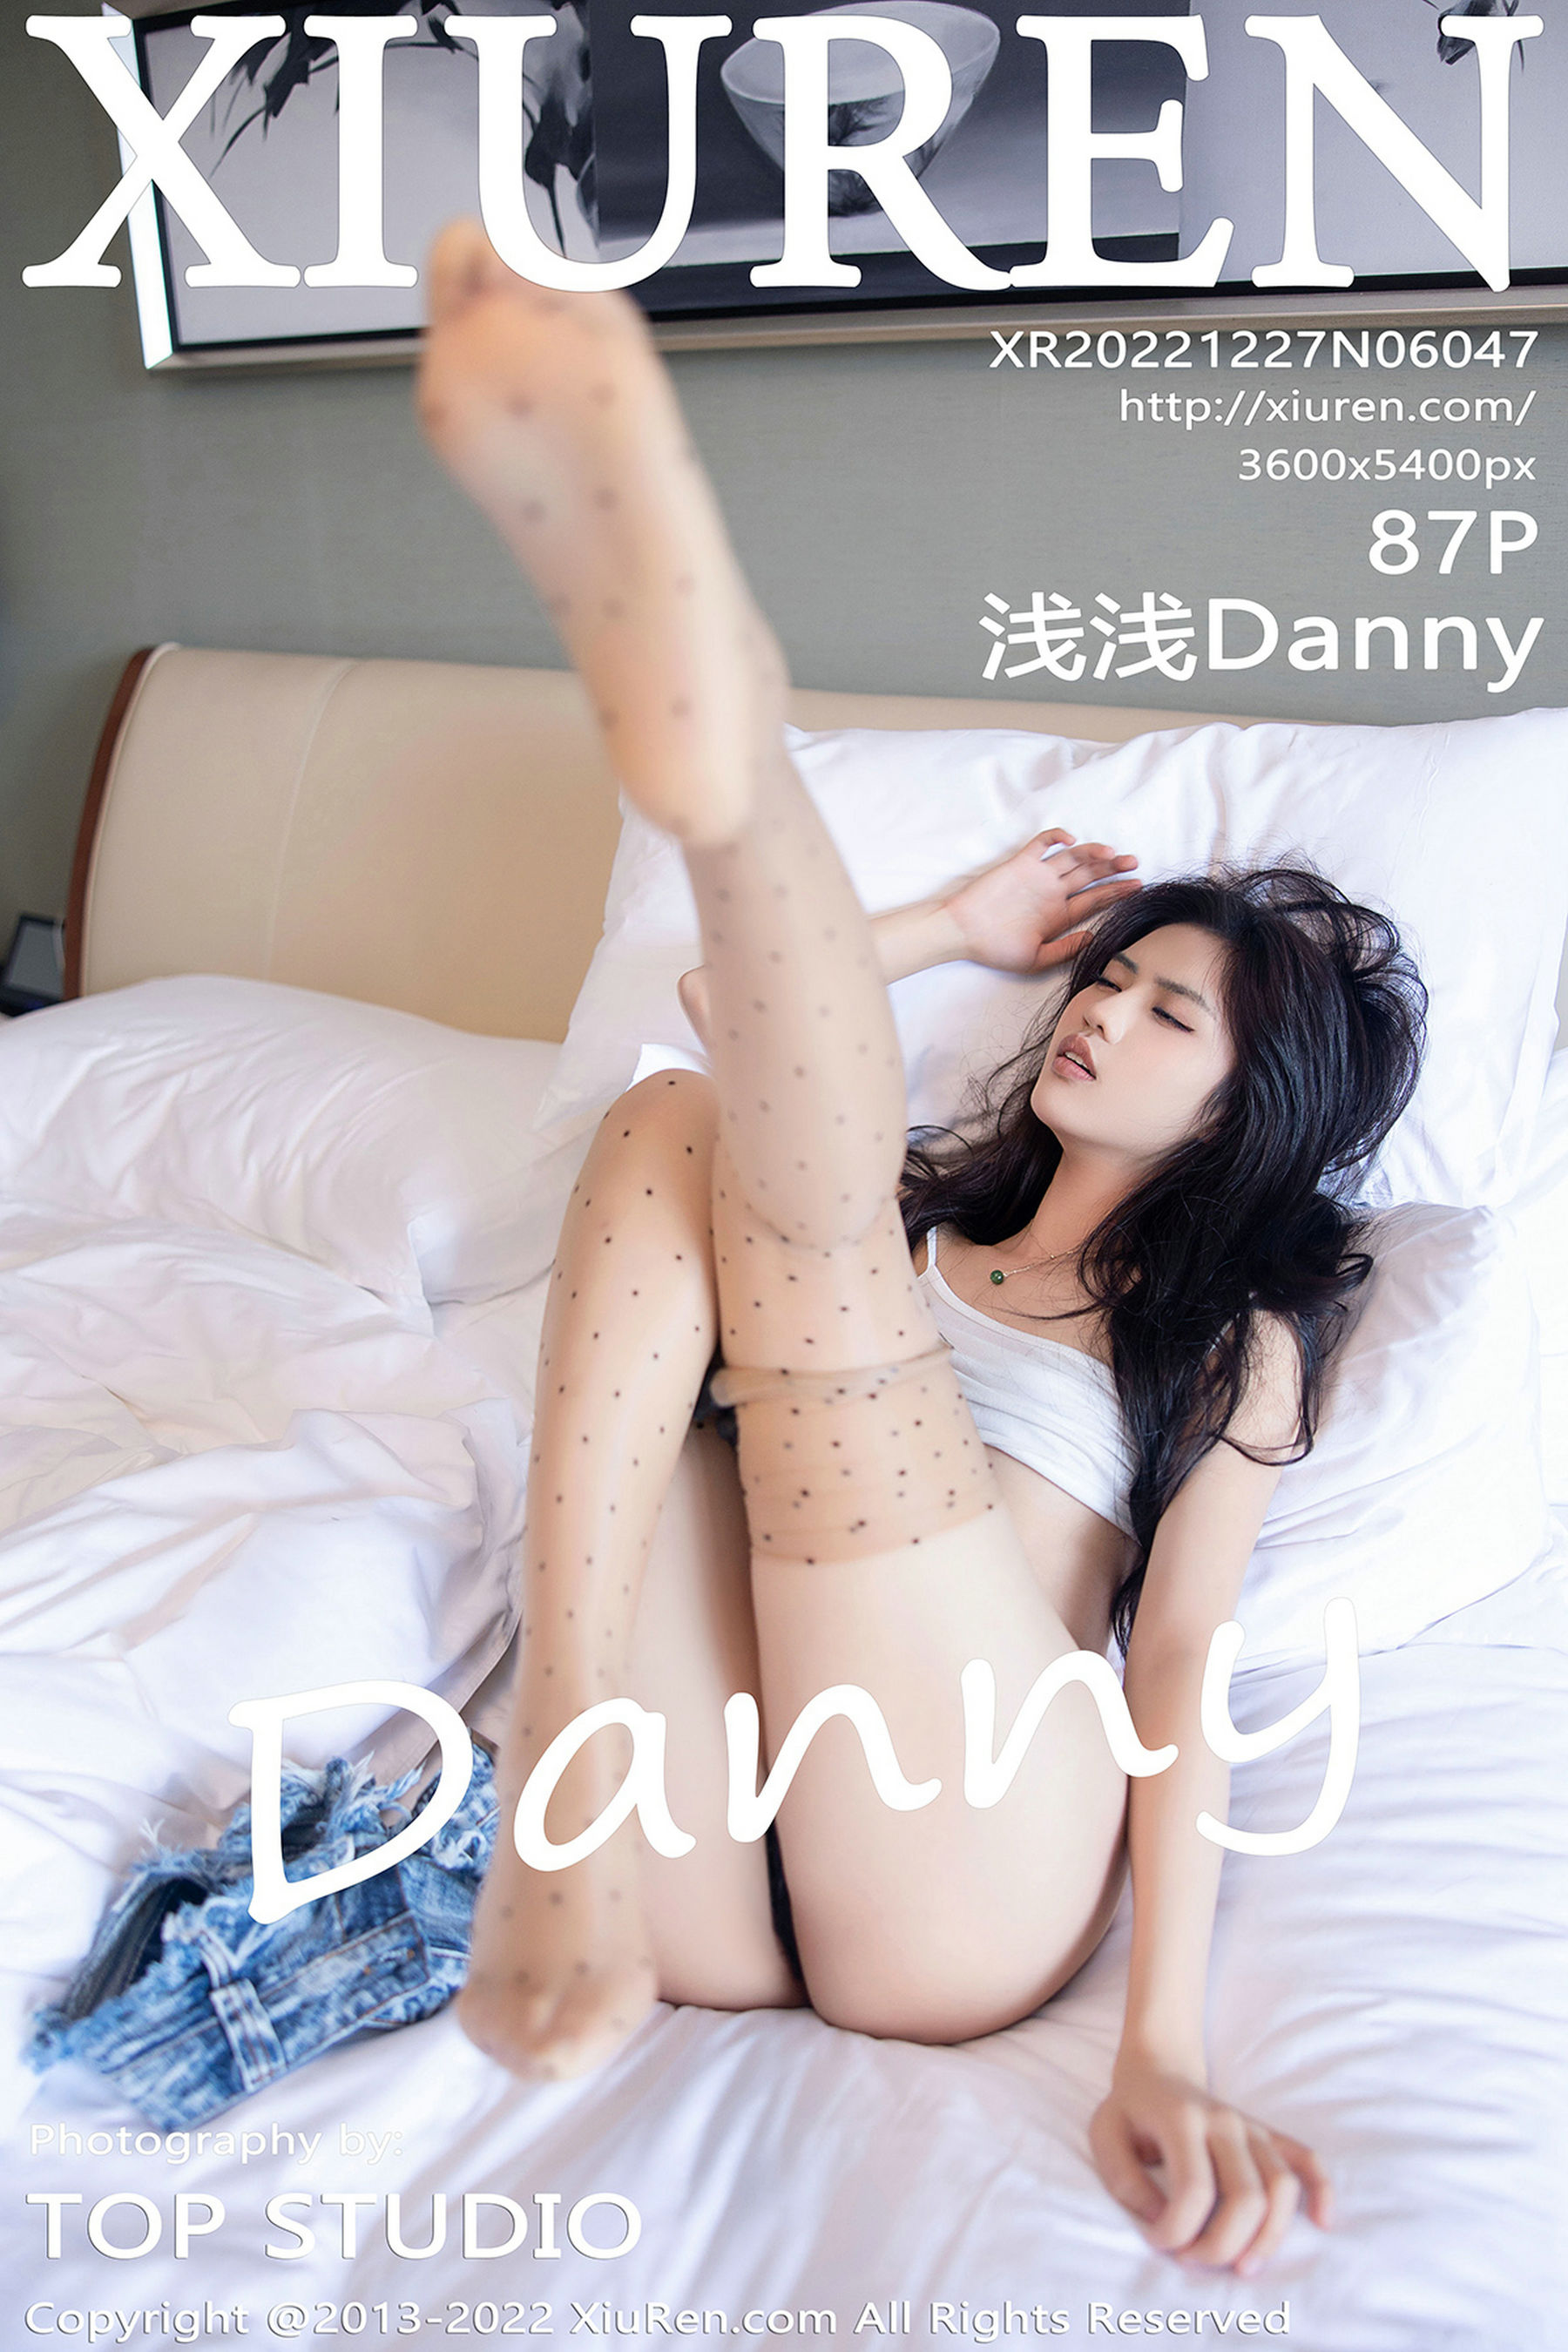 [秀人XiuRen] No.6047 浅浅Danny1